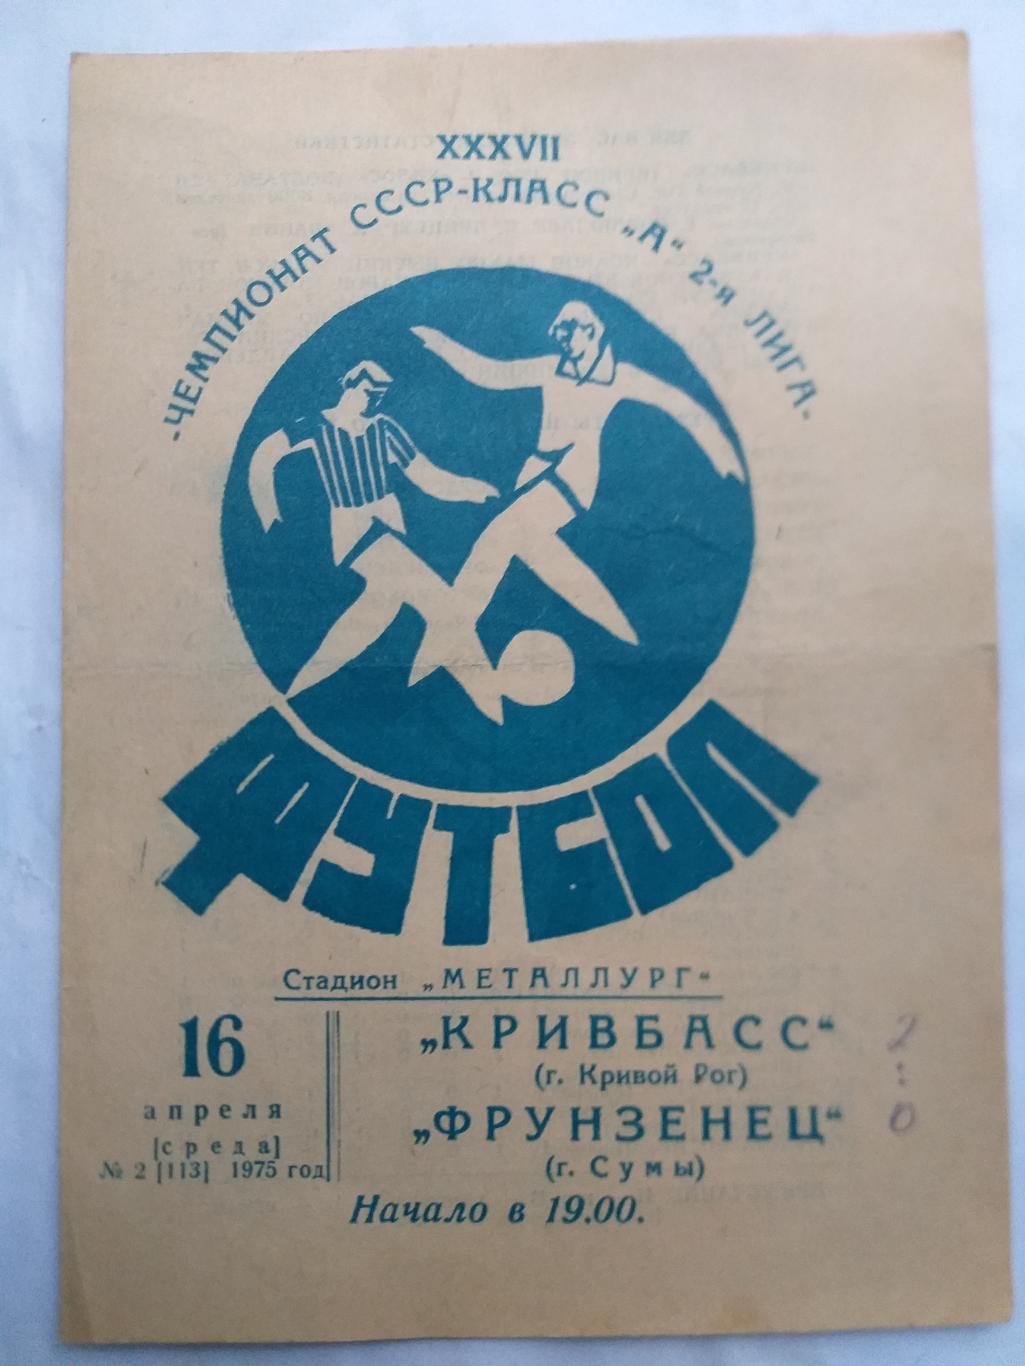 Кривбасс Кривой Рог- Фрунзенец Сумы 1975